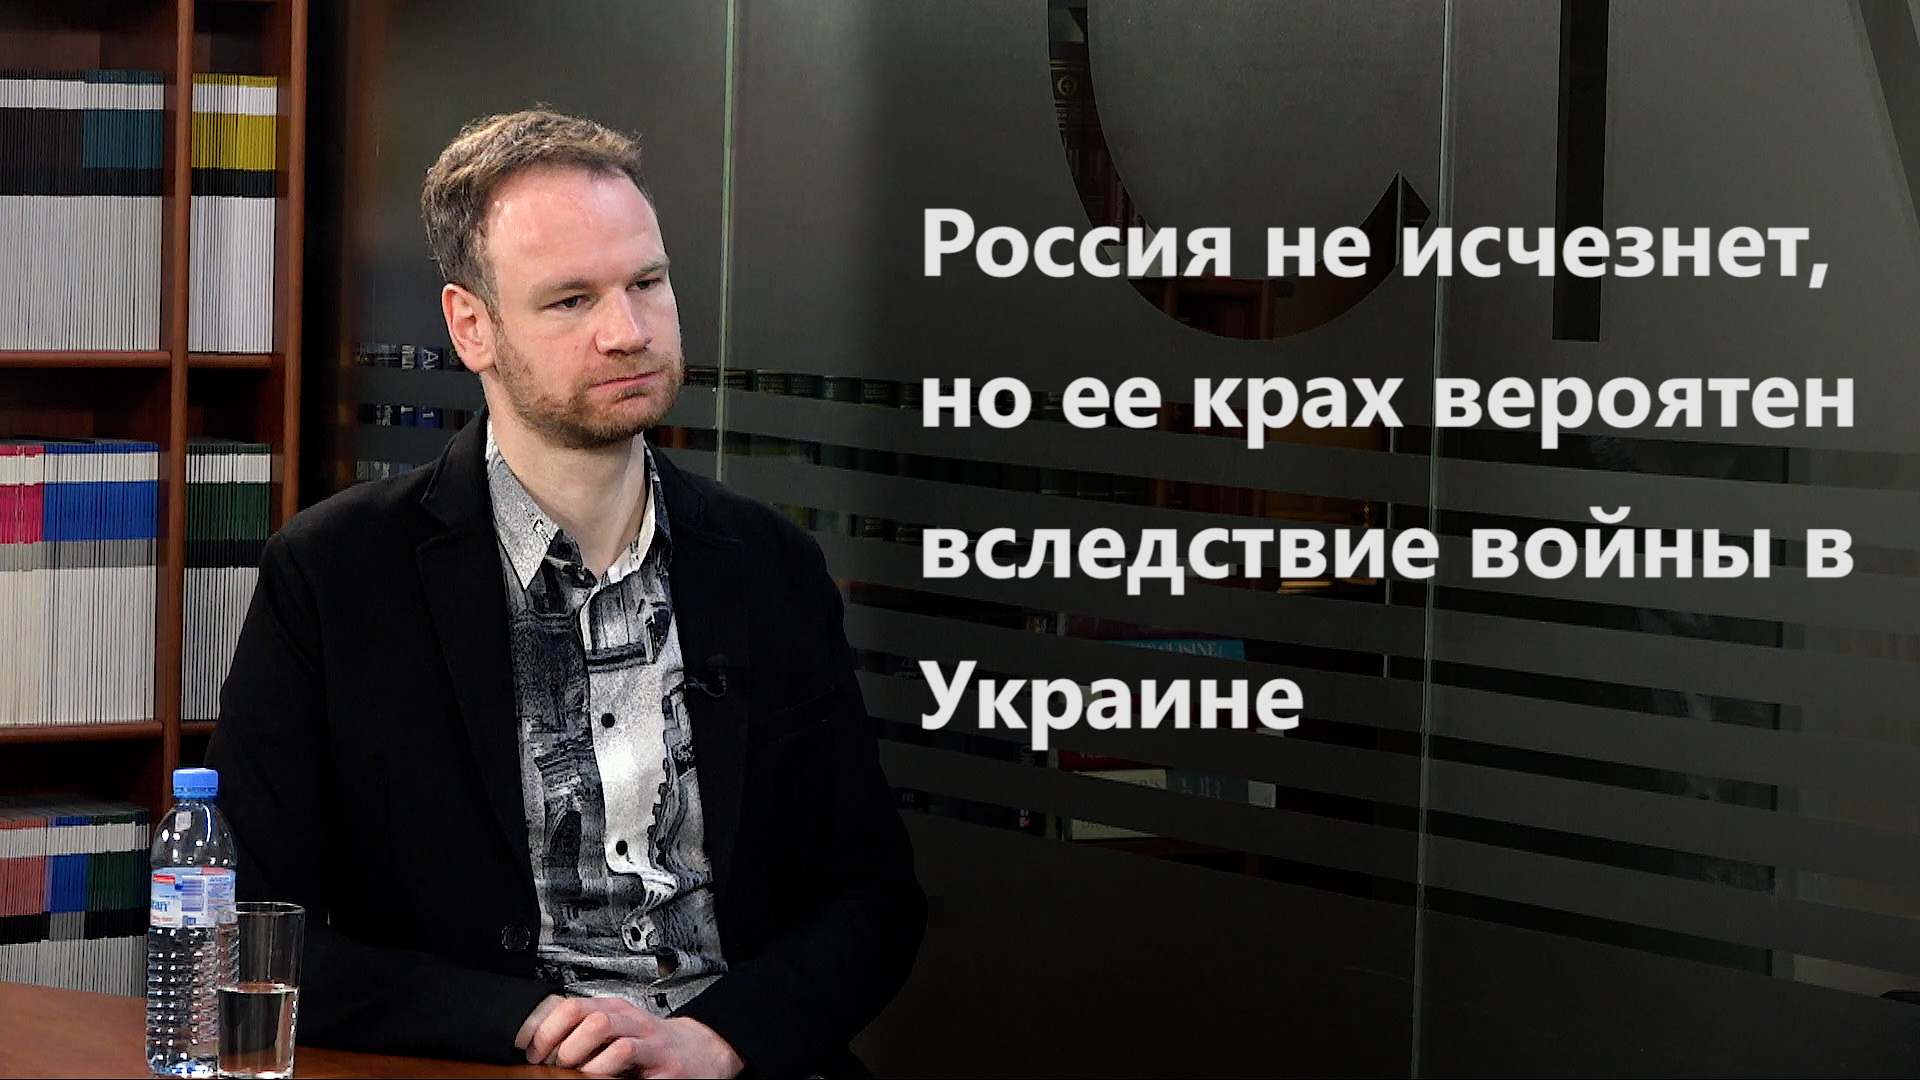 Россия не исчезнет, но ее крах вероятен вследствие войны в Украине: Григорий Юдин